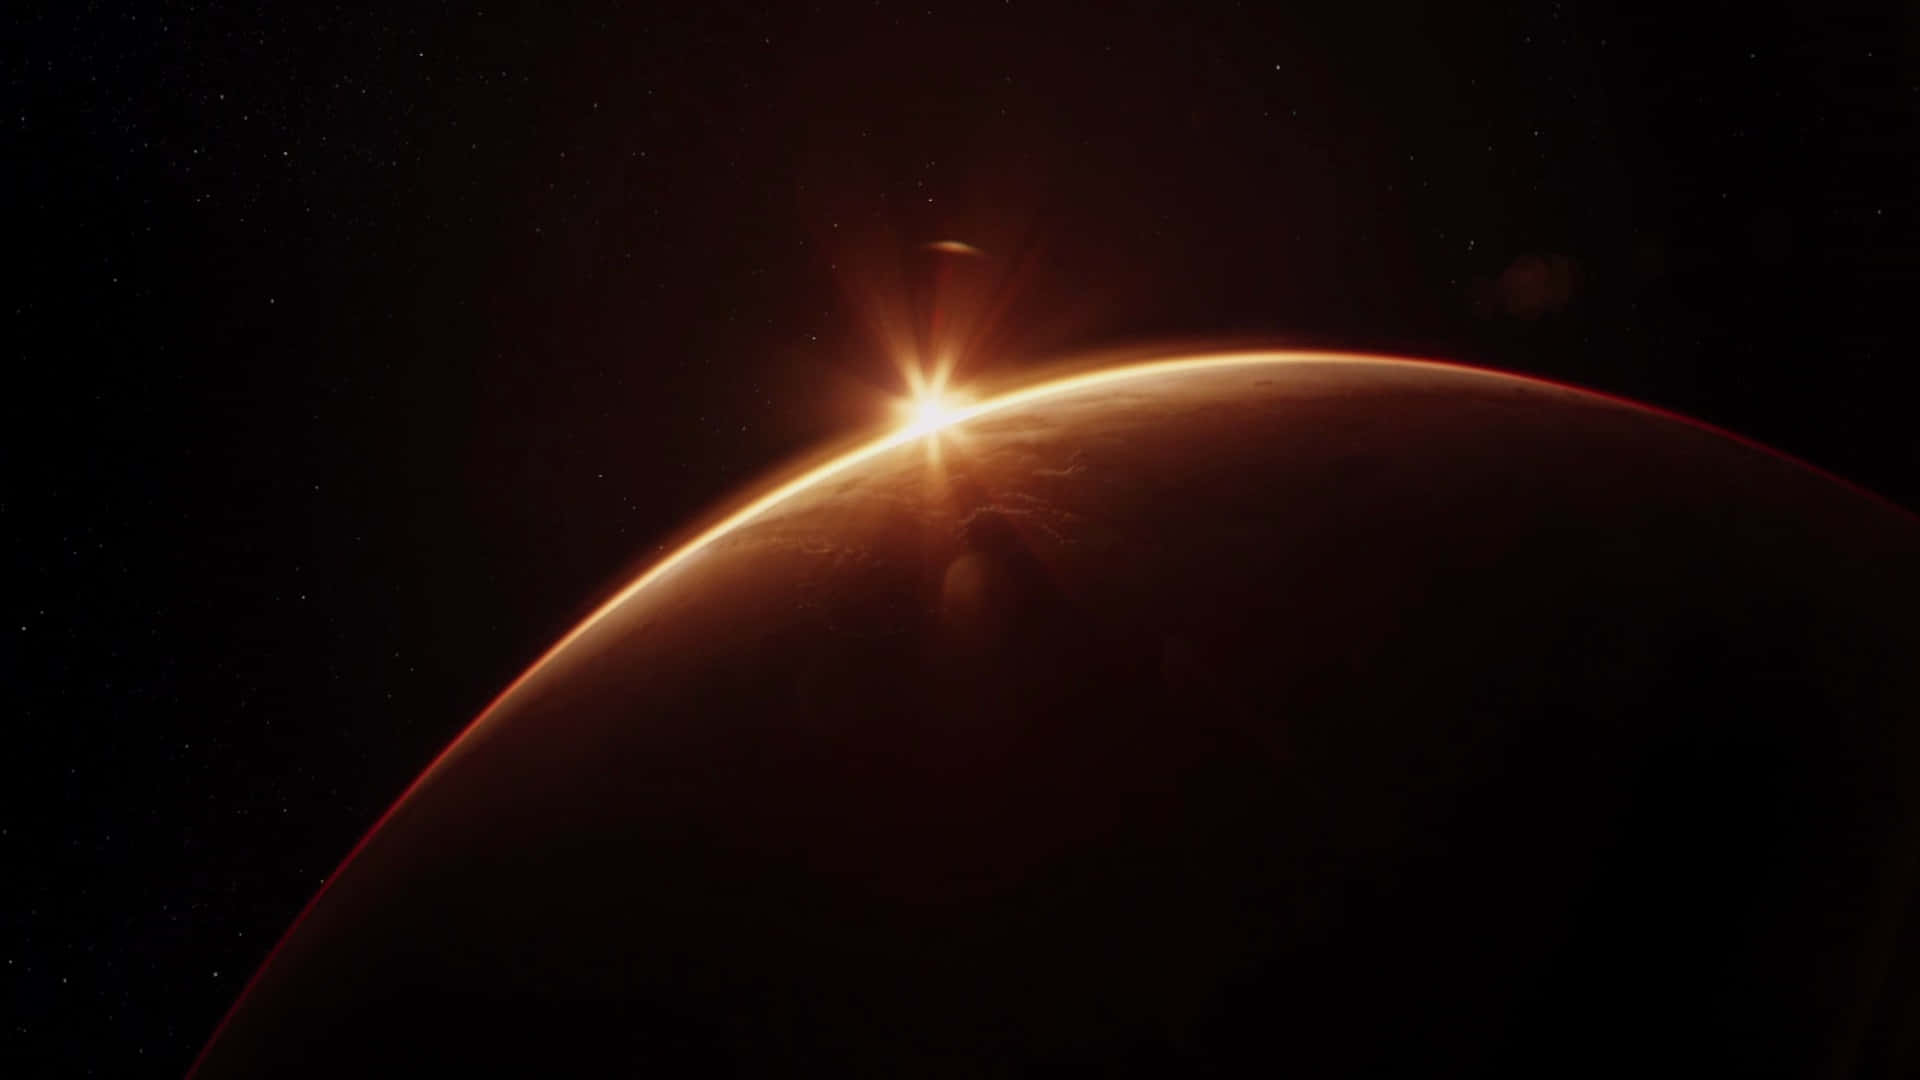 Den røde planet Mars skinner i nattens himmel.